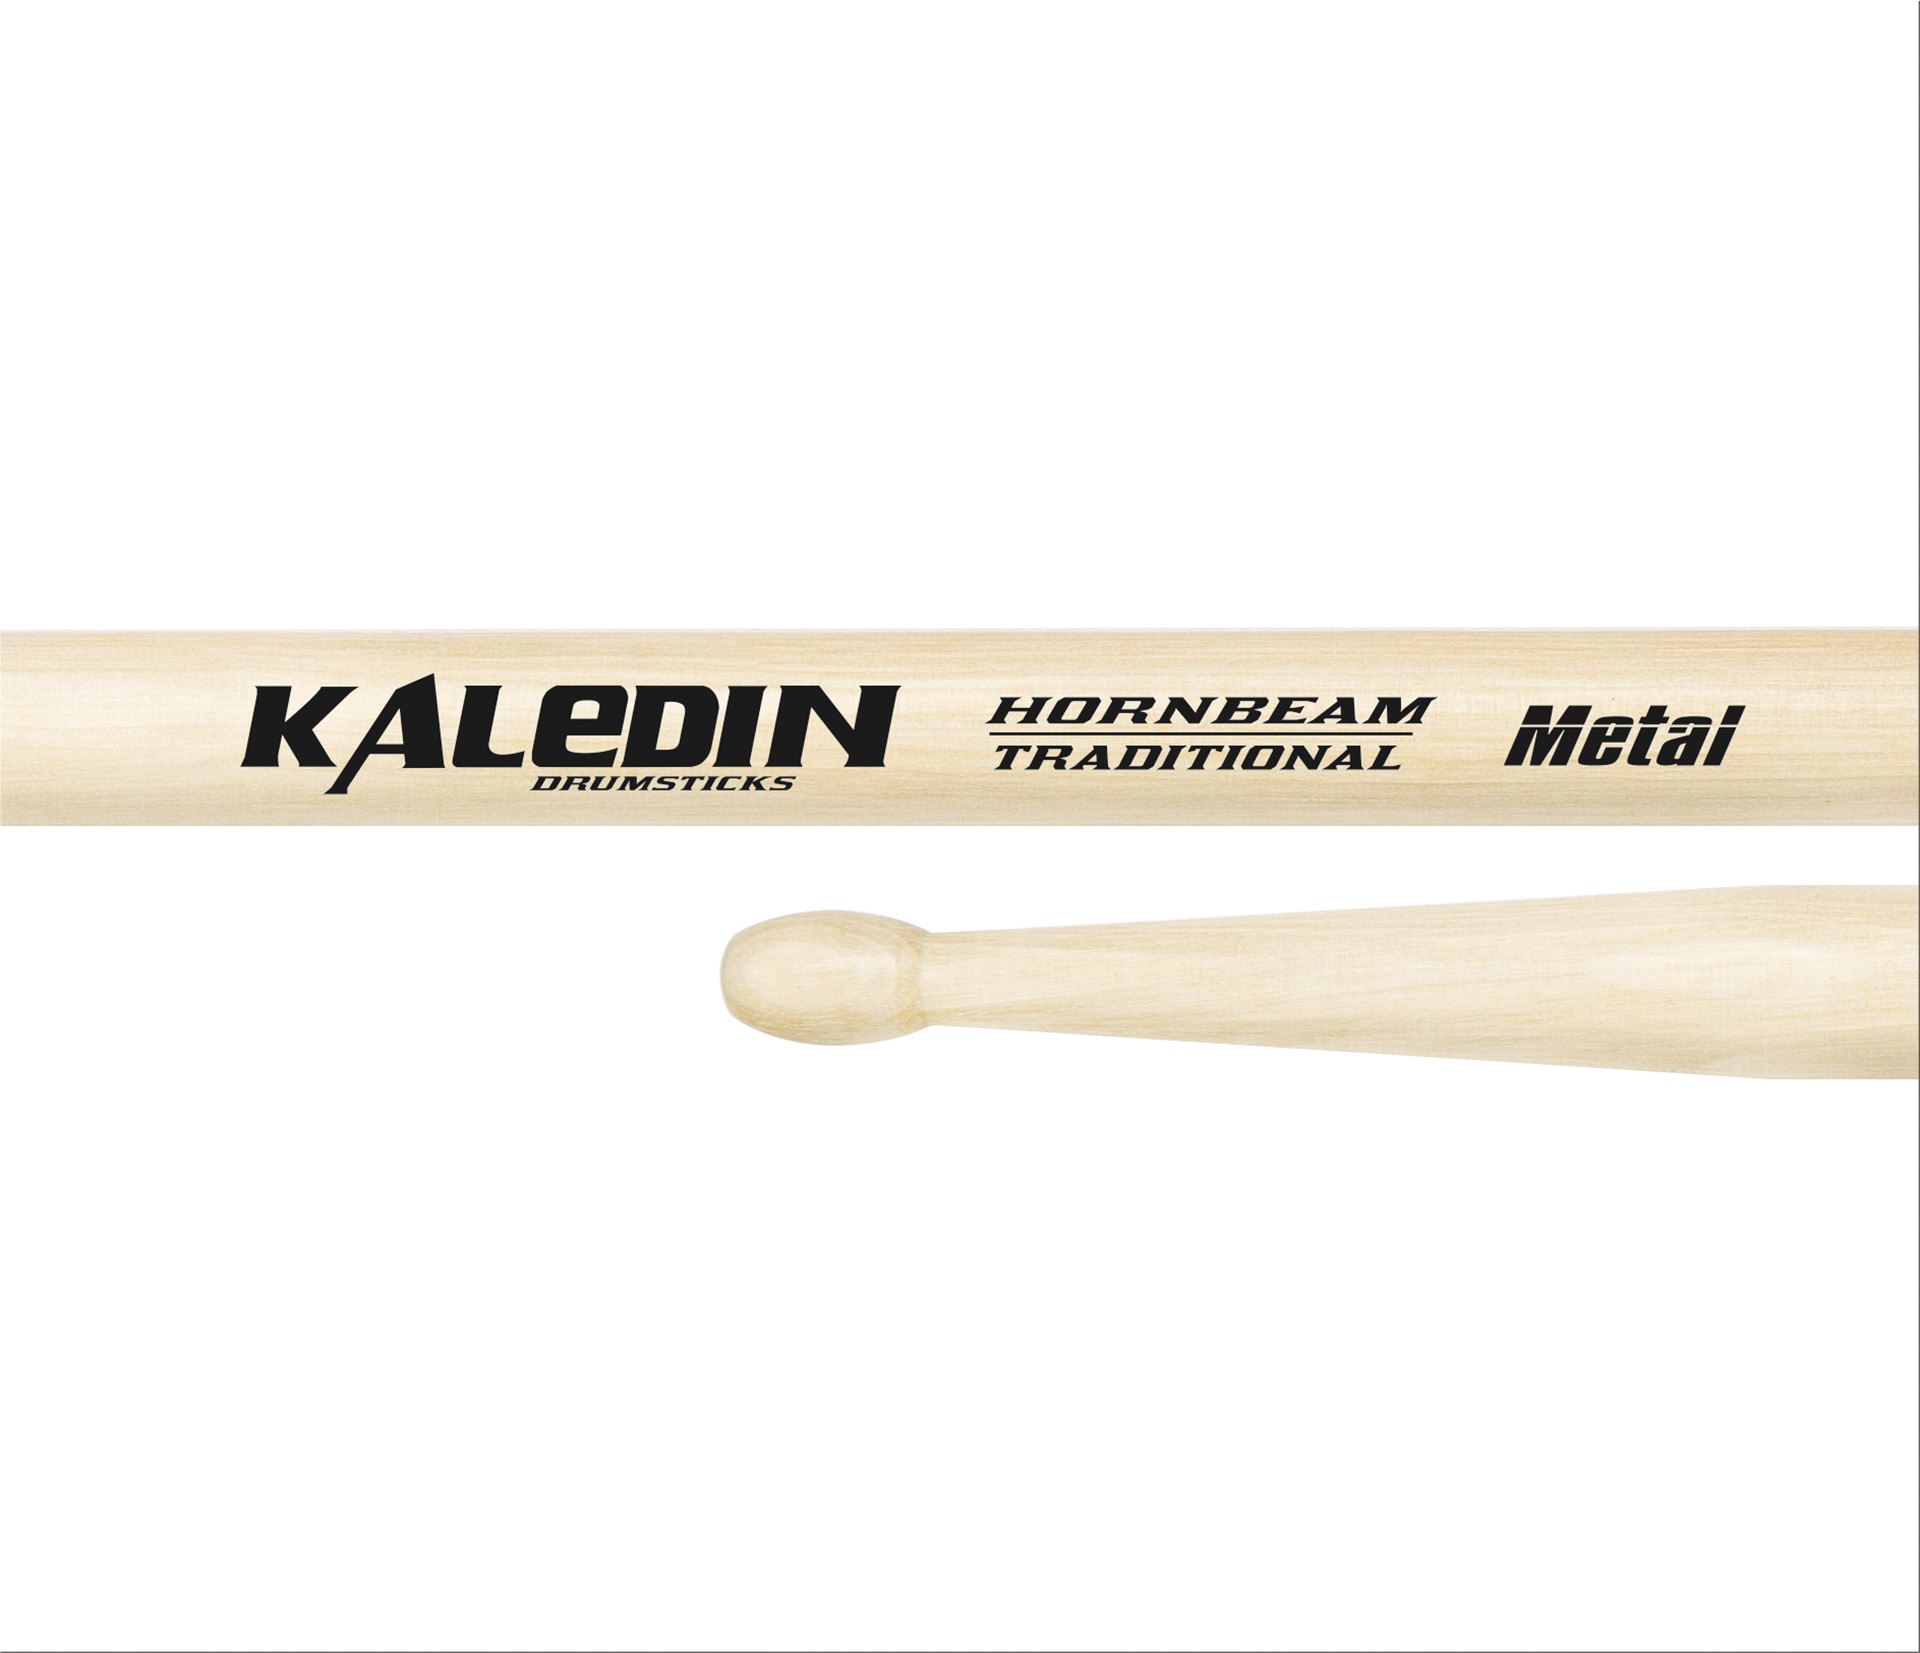 Детальная картинка товара Kaledin Drumsticks 7KLHBML Metal в магазине Музыкальная Тема